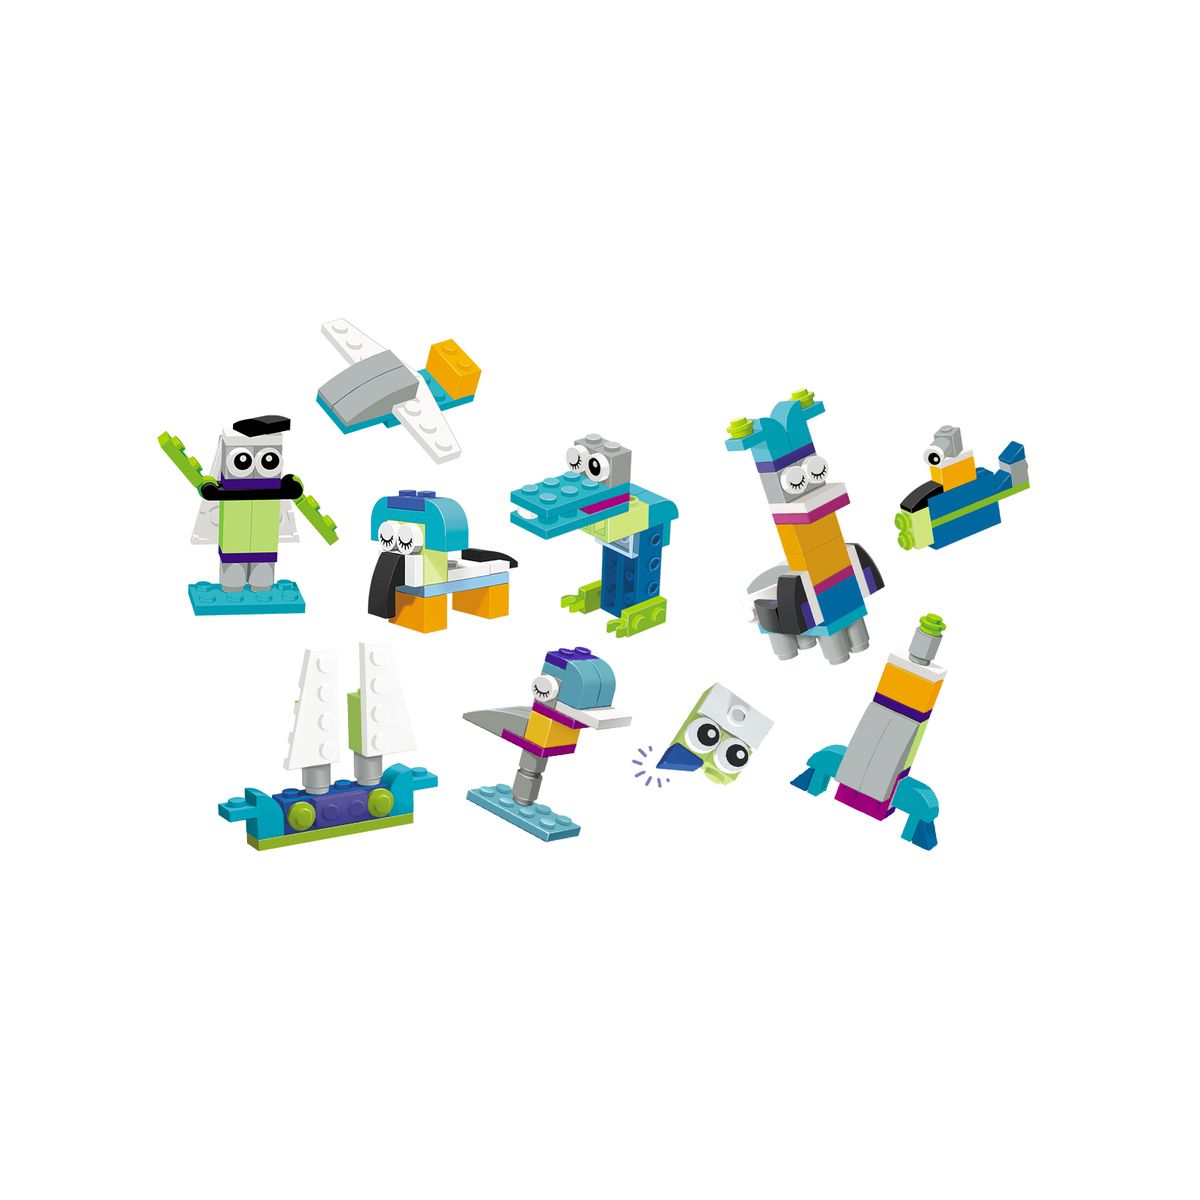 Książka dla dzieci LEGO® Iconic. Zbuduj ponad 100 modeli! Ameet (LQB6601)